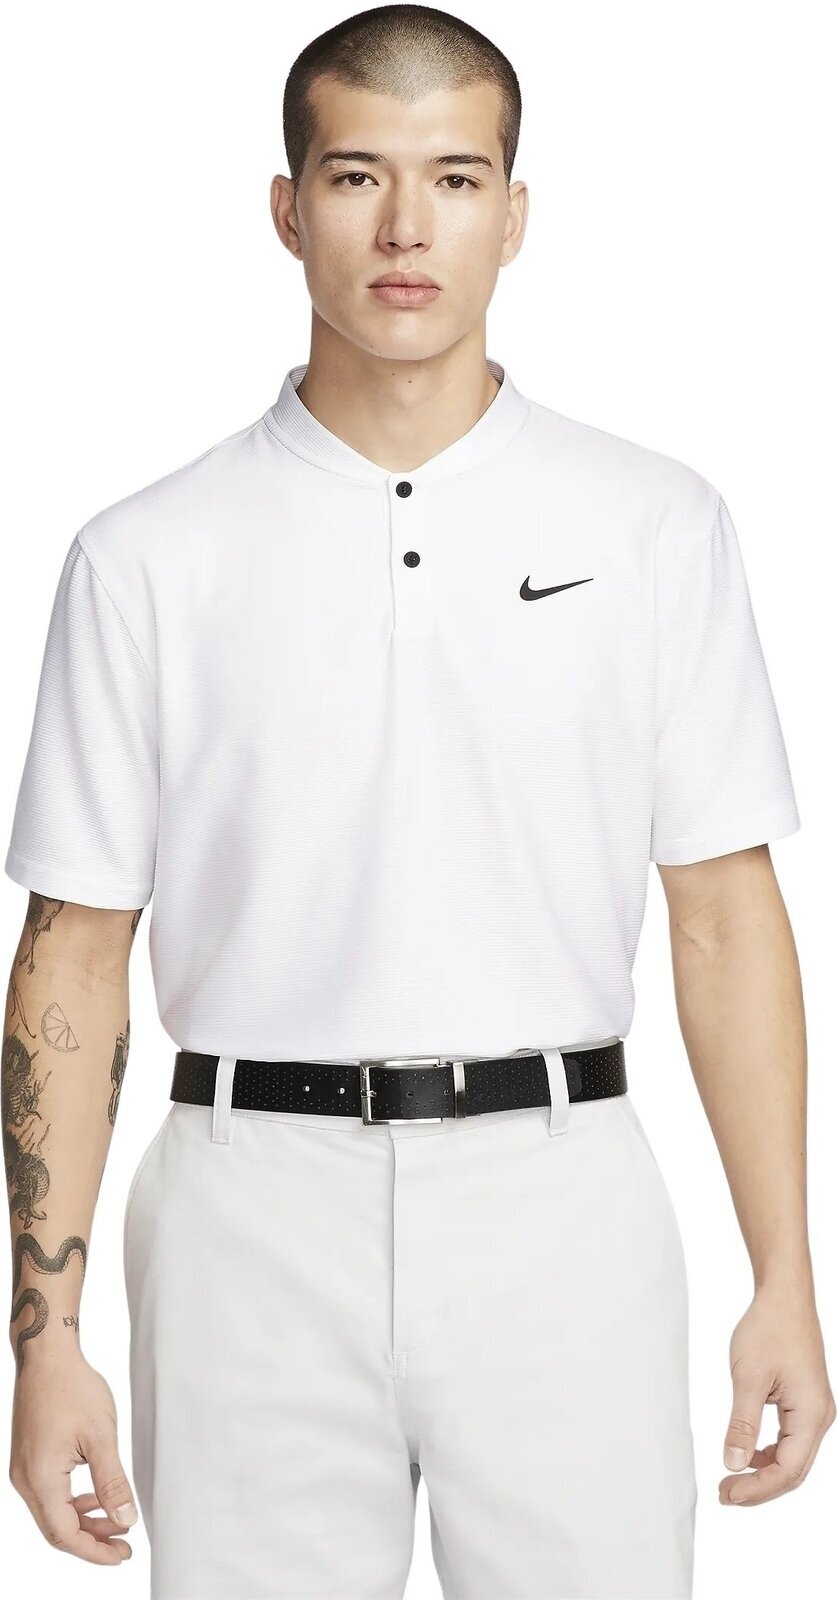 Polo majica Nike Dri-Fit Victory Texture Mens Polo White/Black S Polo majica